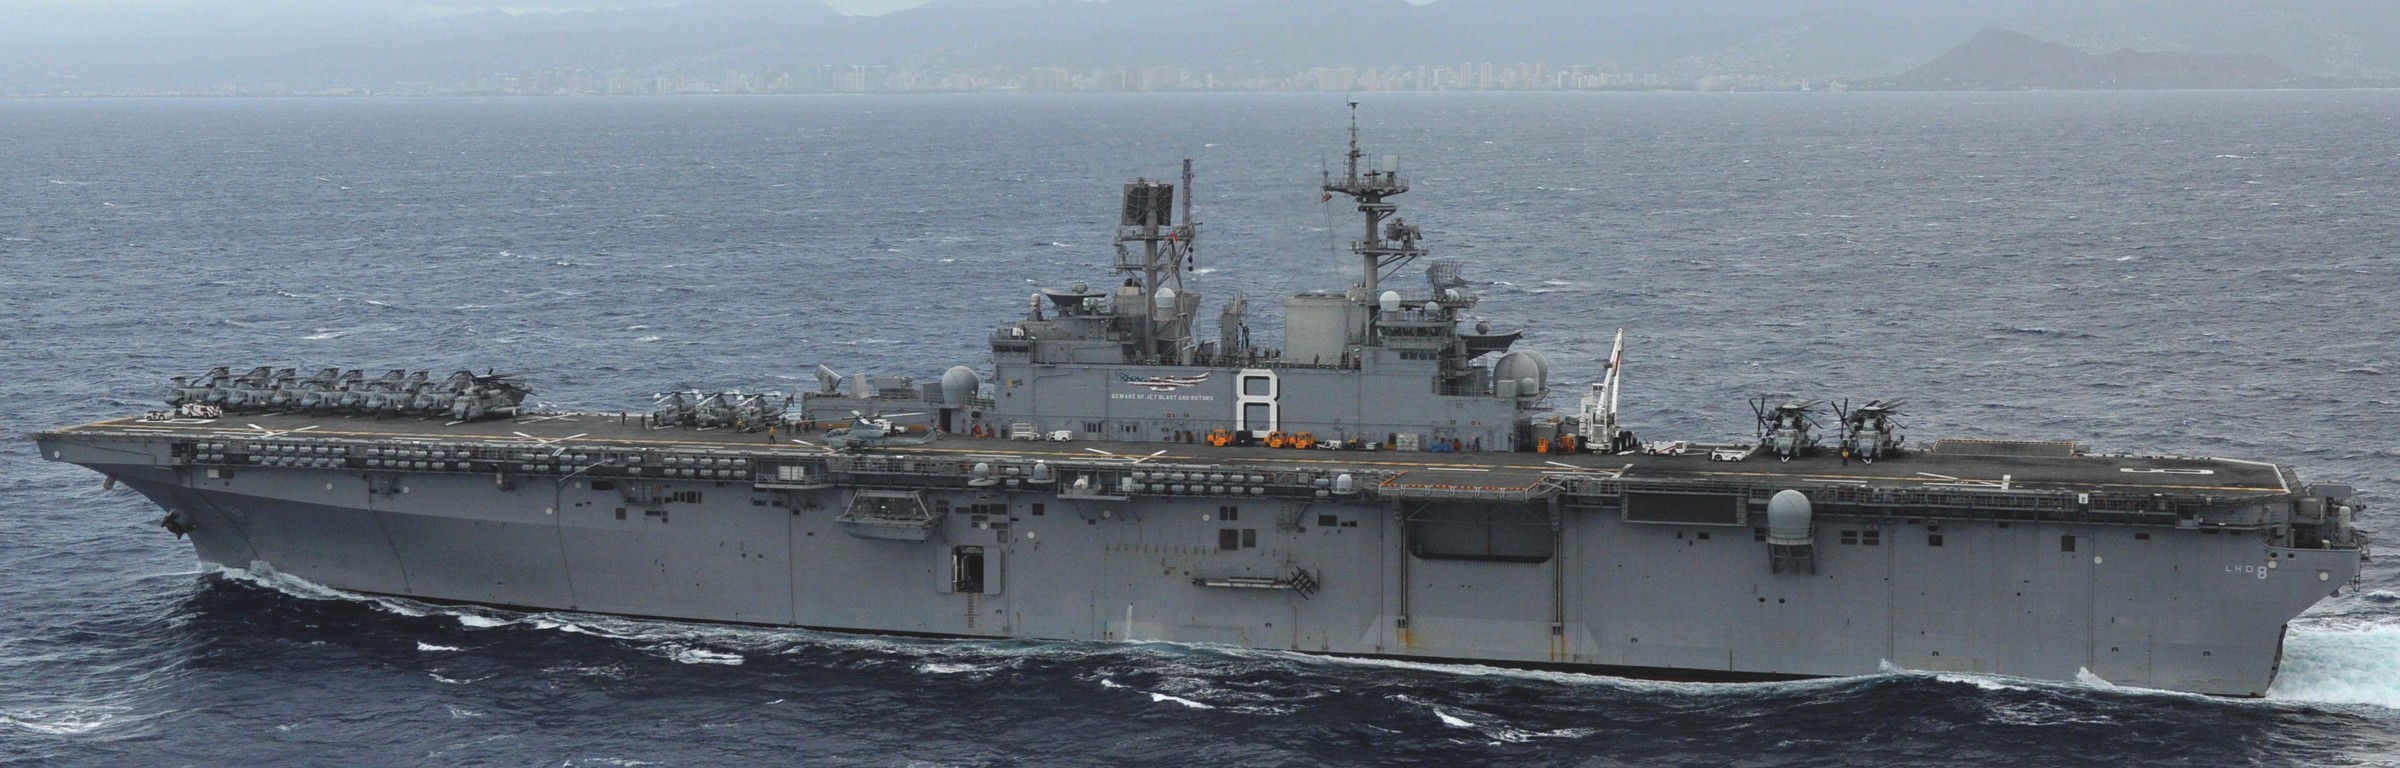 lhd-8 uss makin island amphibious assault ship landing helicopter dock us navy hmm-268 marines hawaii 54